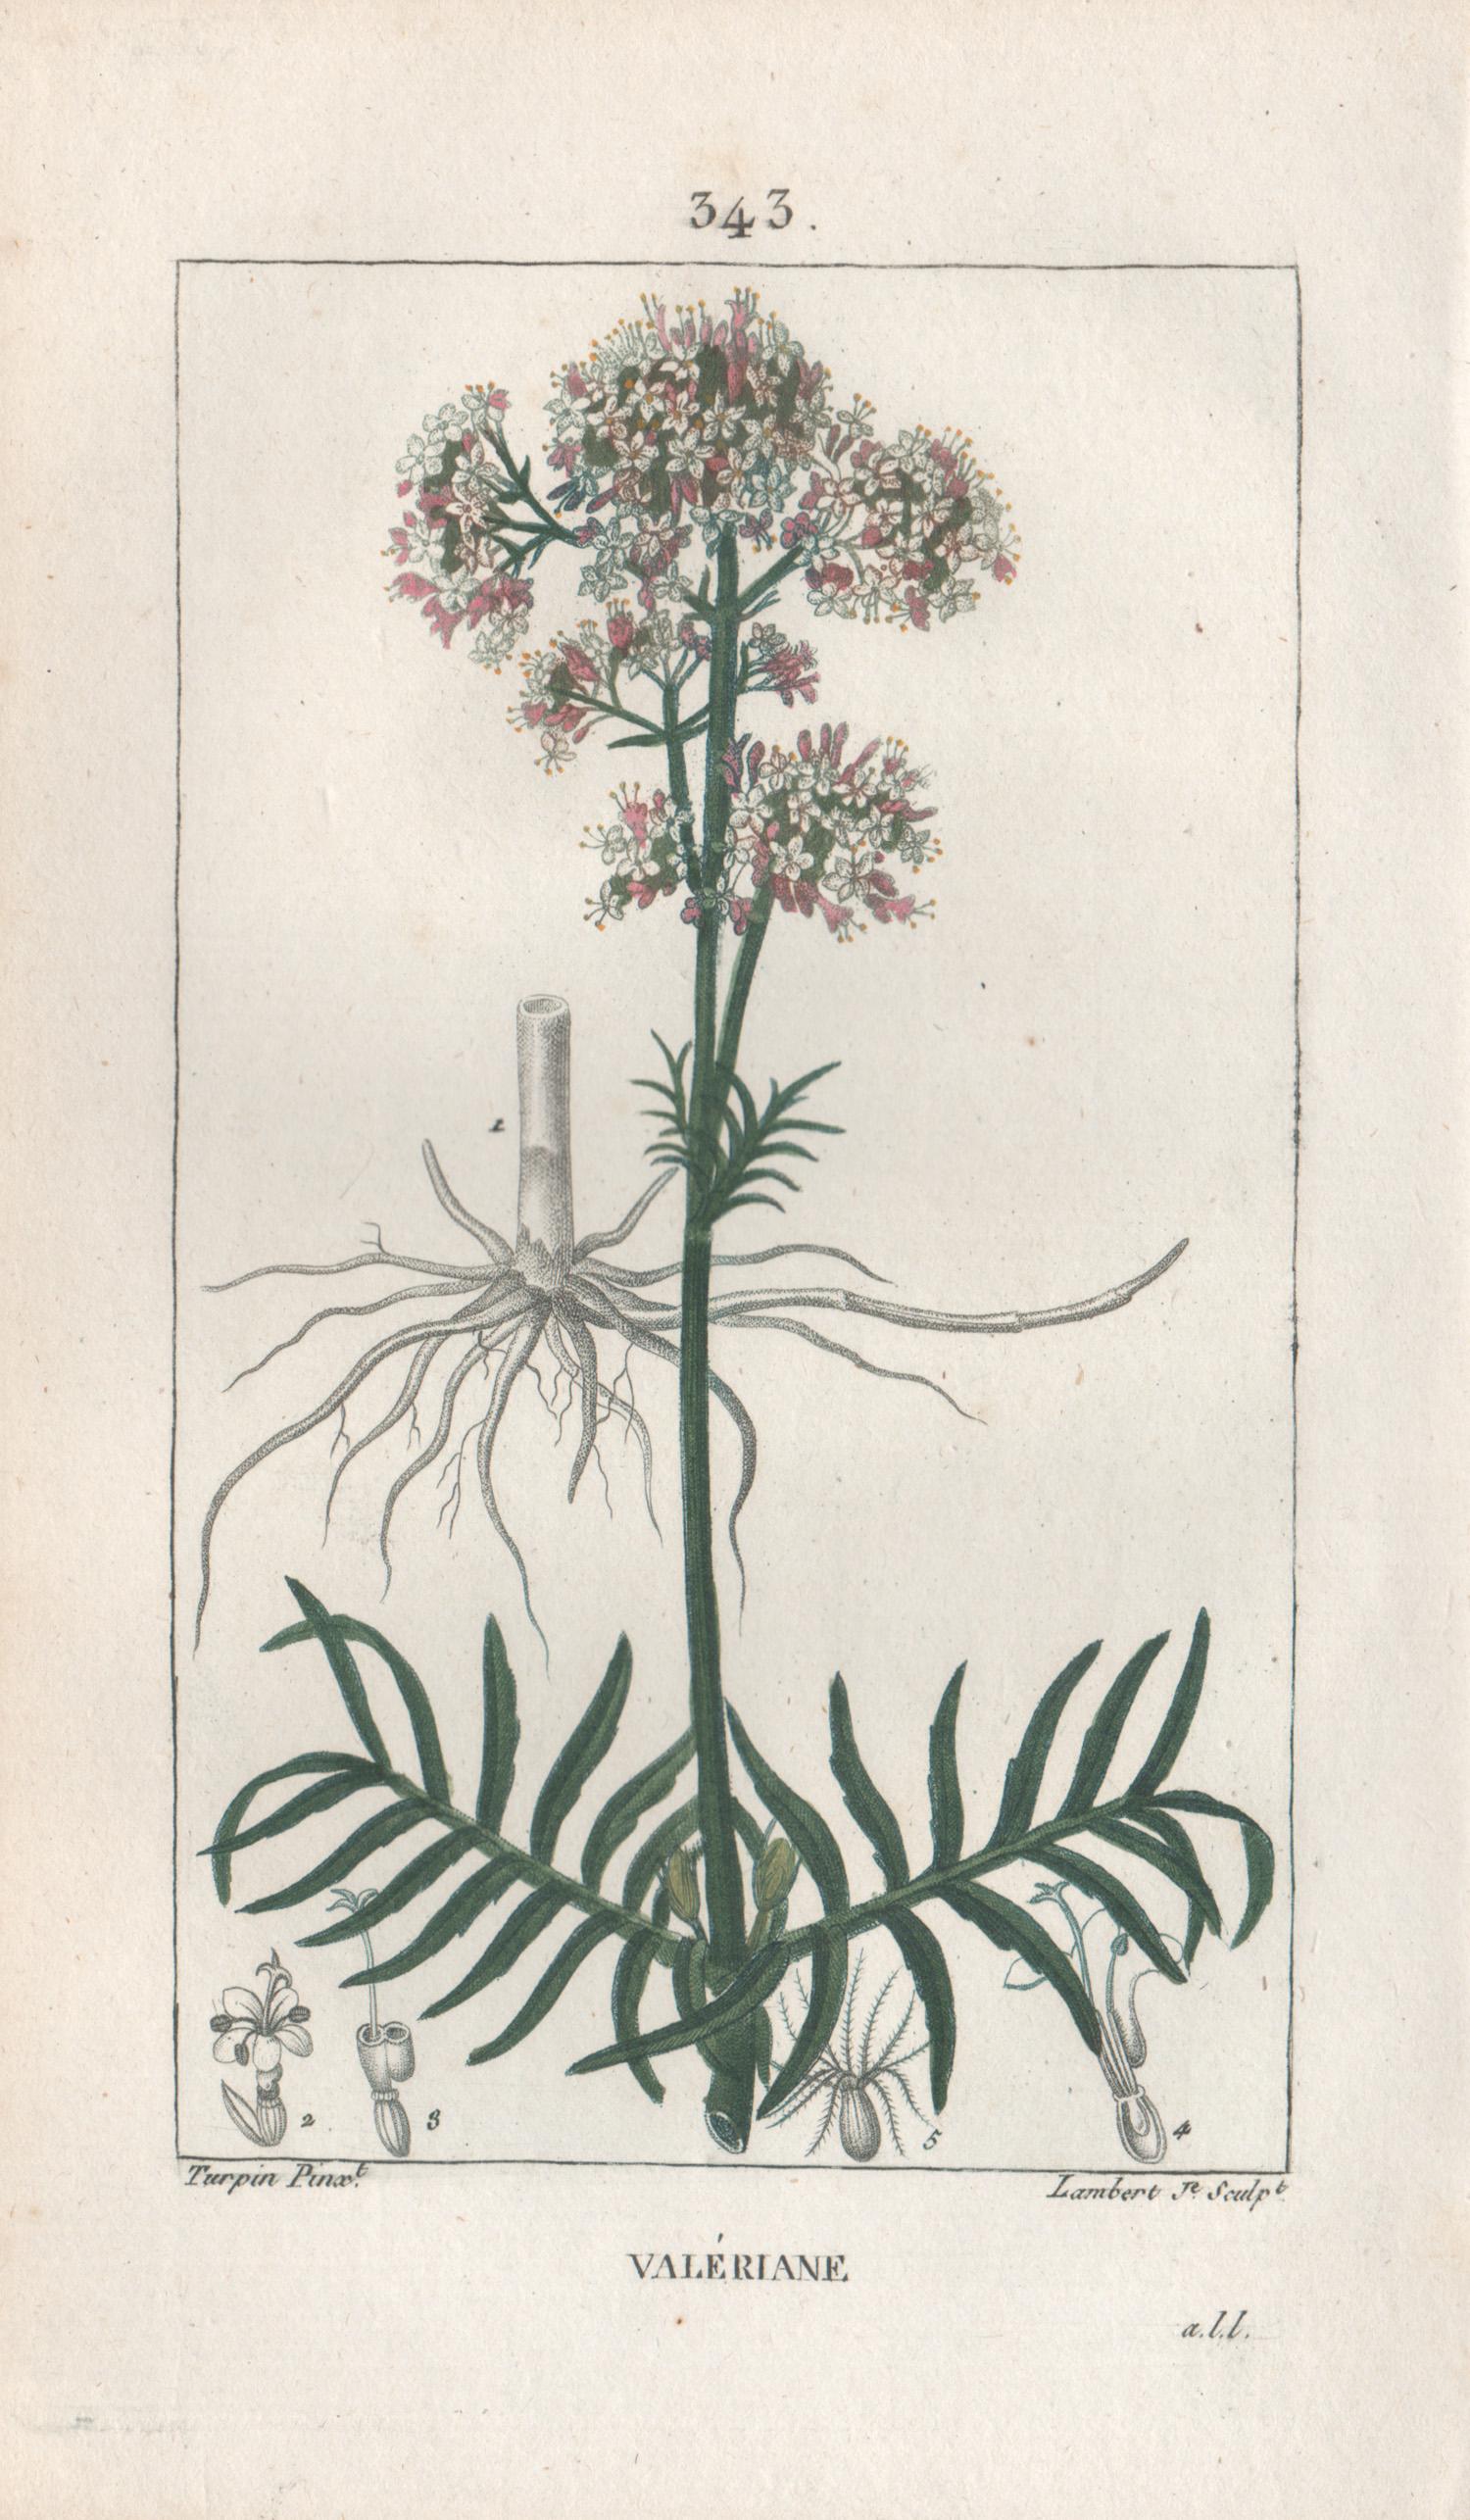 Valeriane ( valerienne), gravure française de fleurs herboriques et botaniques curatives, 1818